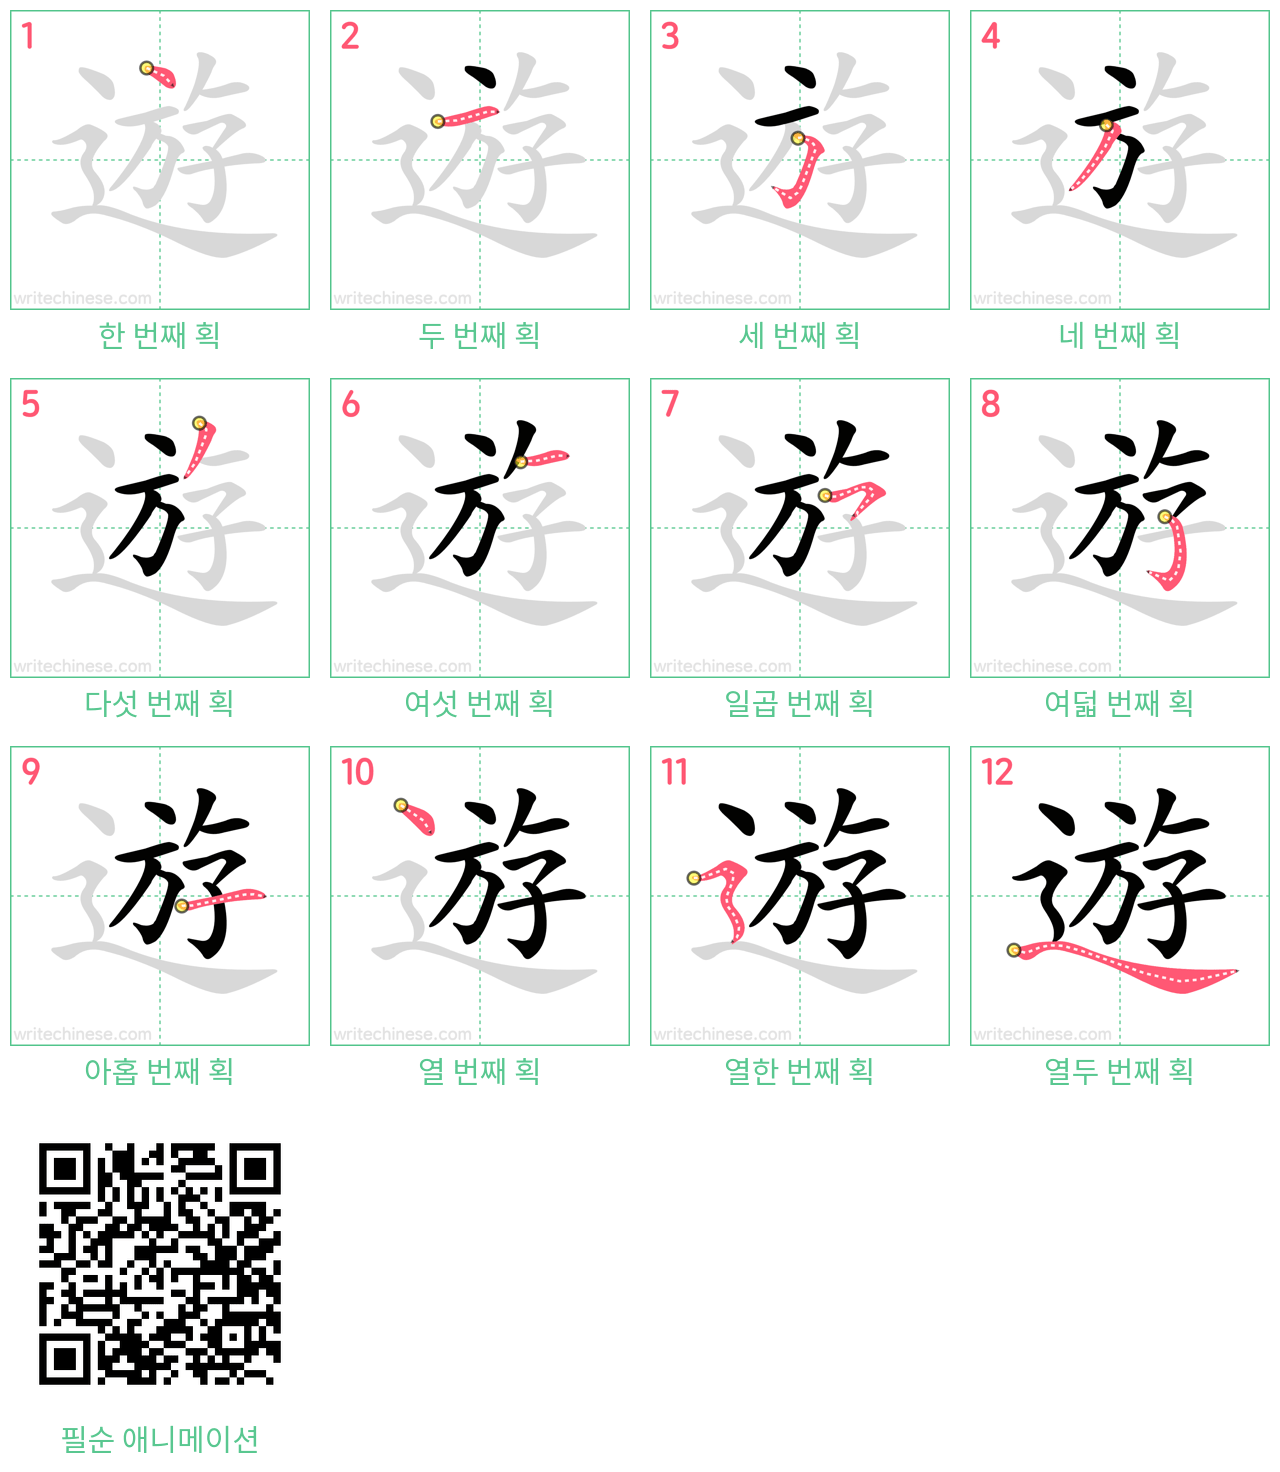 遊 step-by-step stroke order diagrams